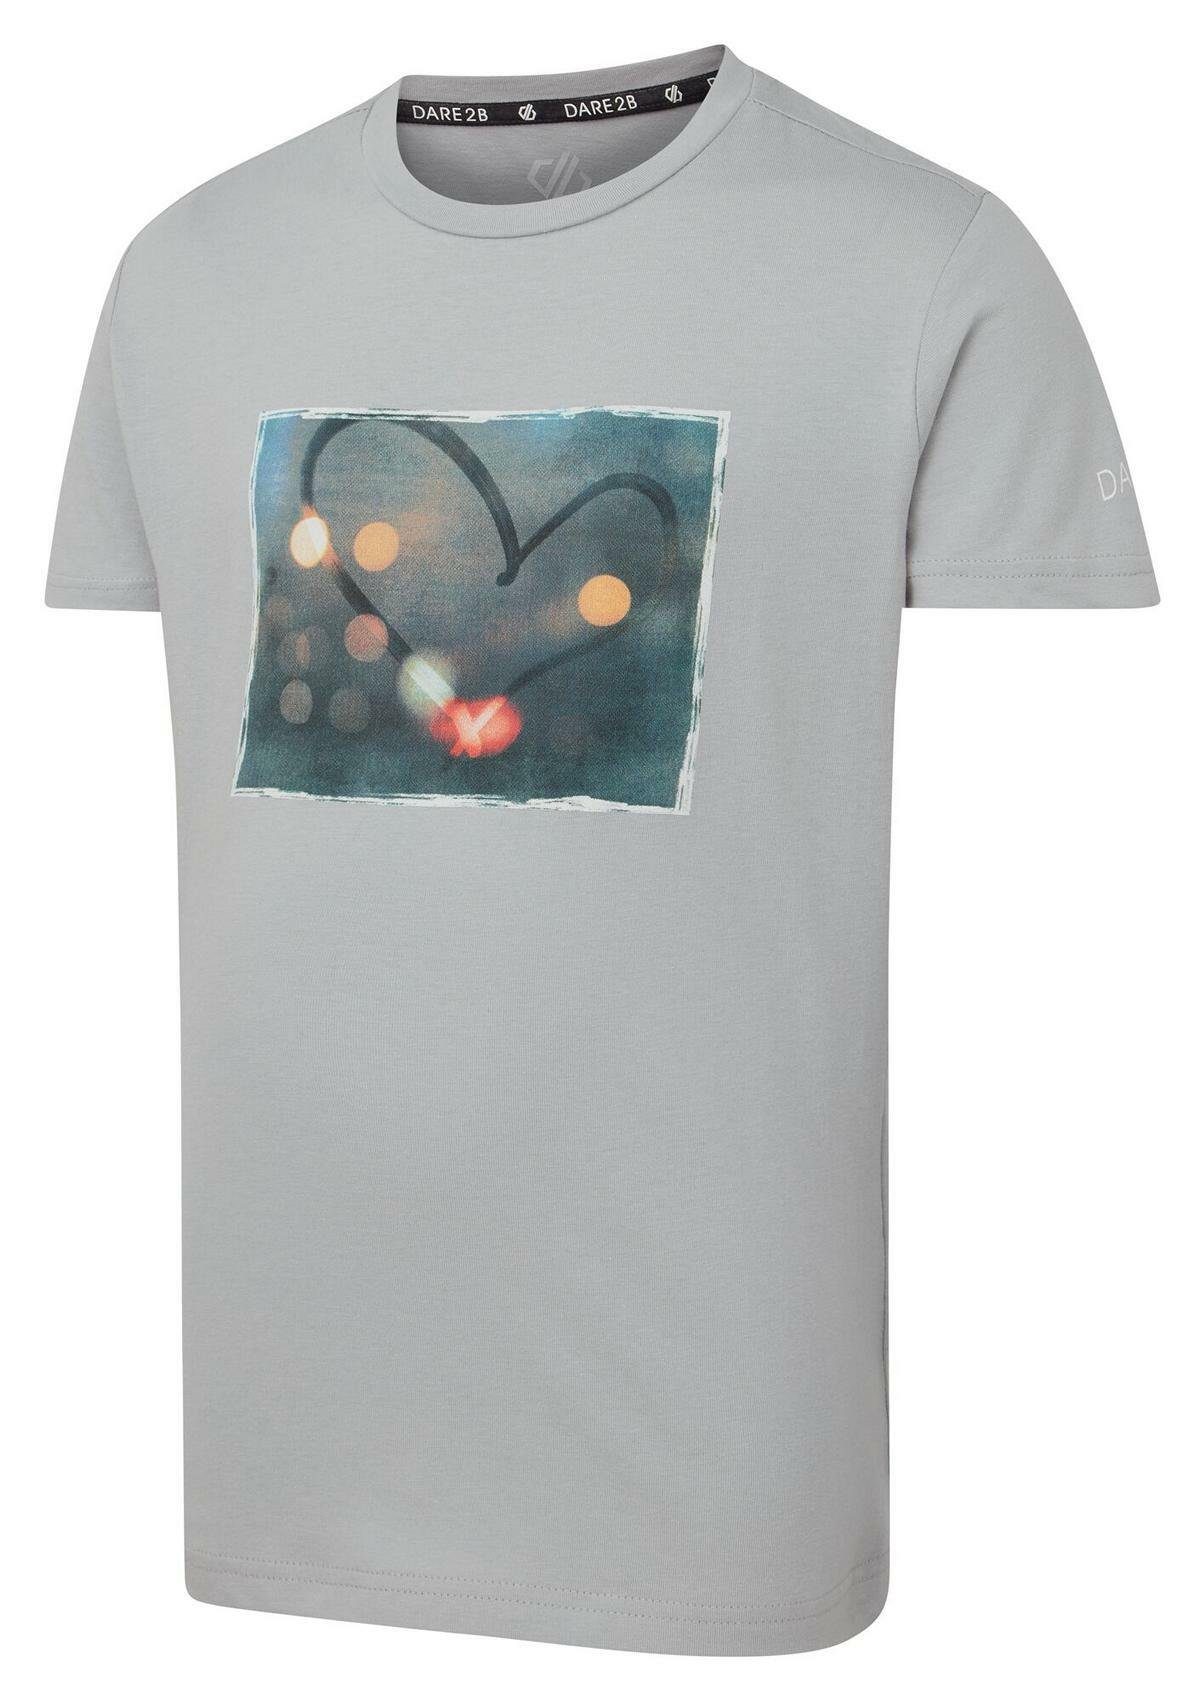 T-Shirt Beyond Argent mit Dare2b Grey Go Print